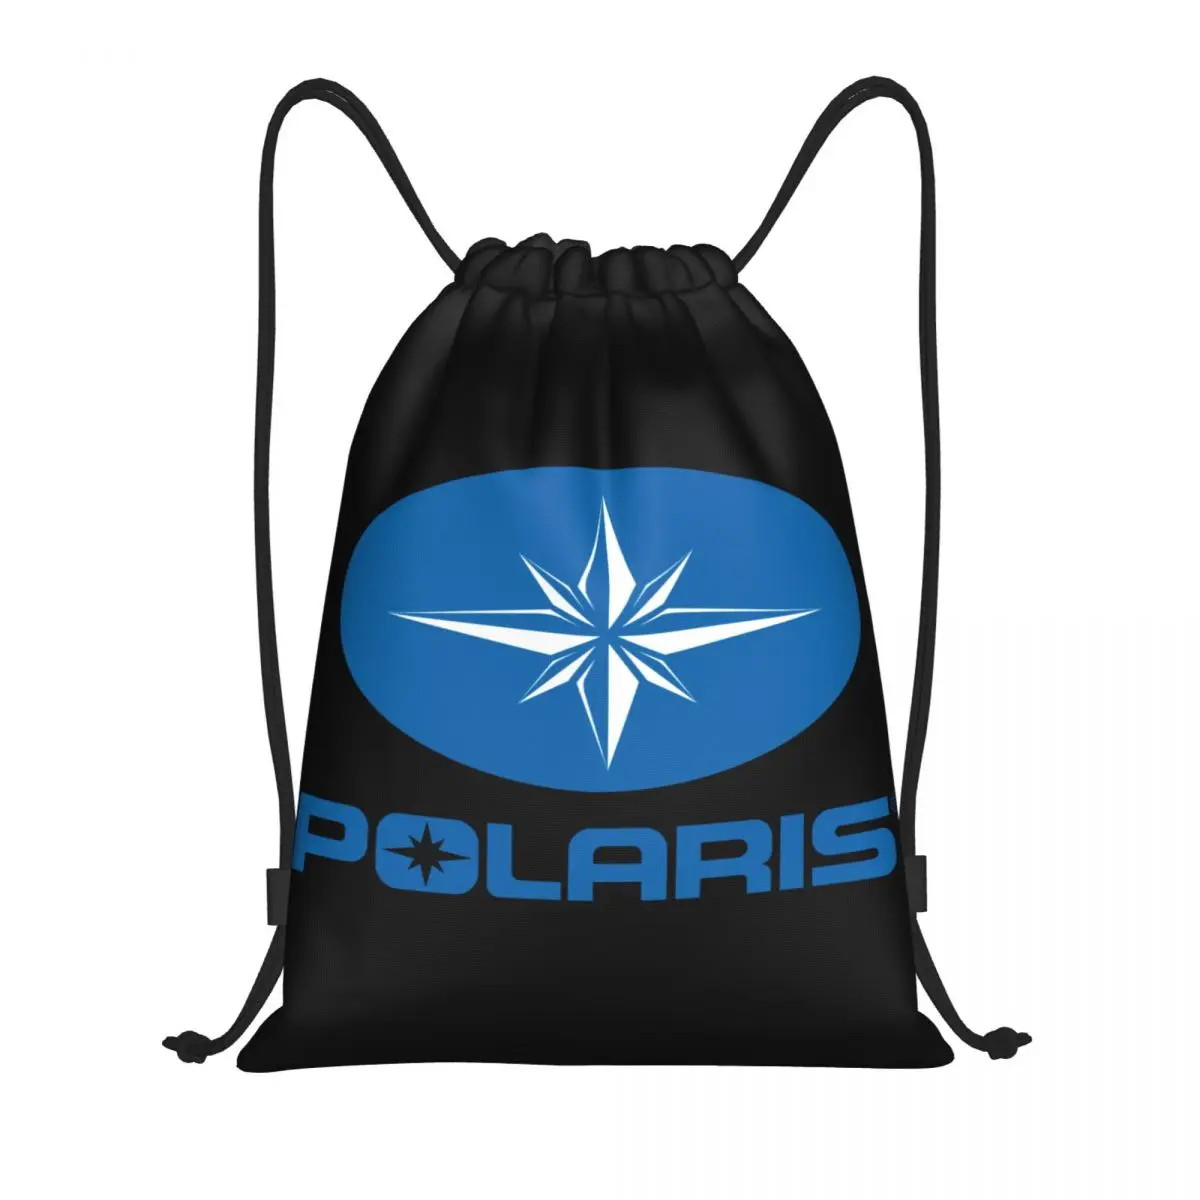 Рюкзак на шнурке с логотипом Polaris, спортивная сумка для спортзала, рюкзак на шнурках для велоспорта